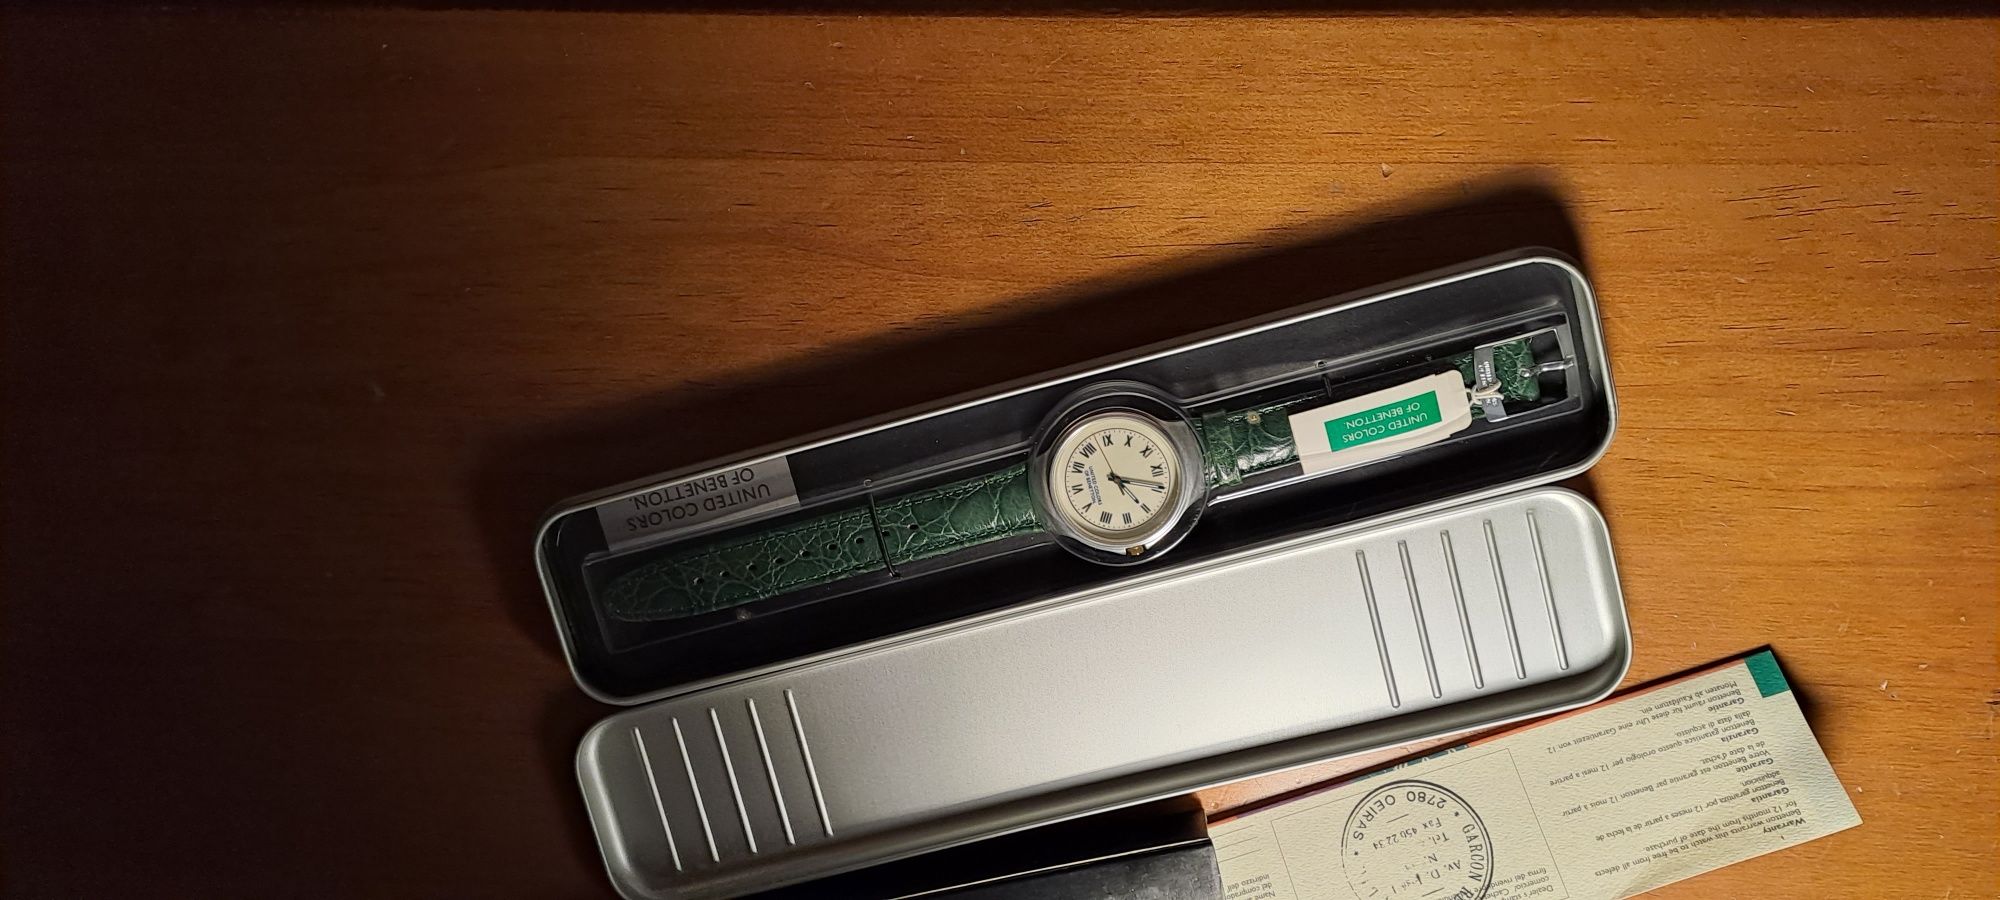 Relógio da Benetton com 25 anos nunca usado dentro da caixa original